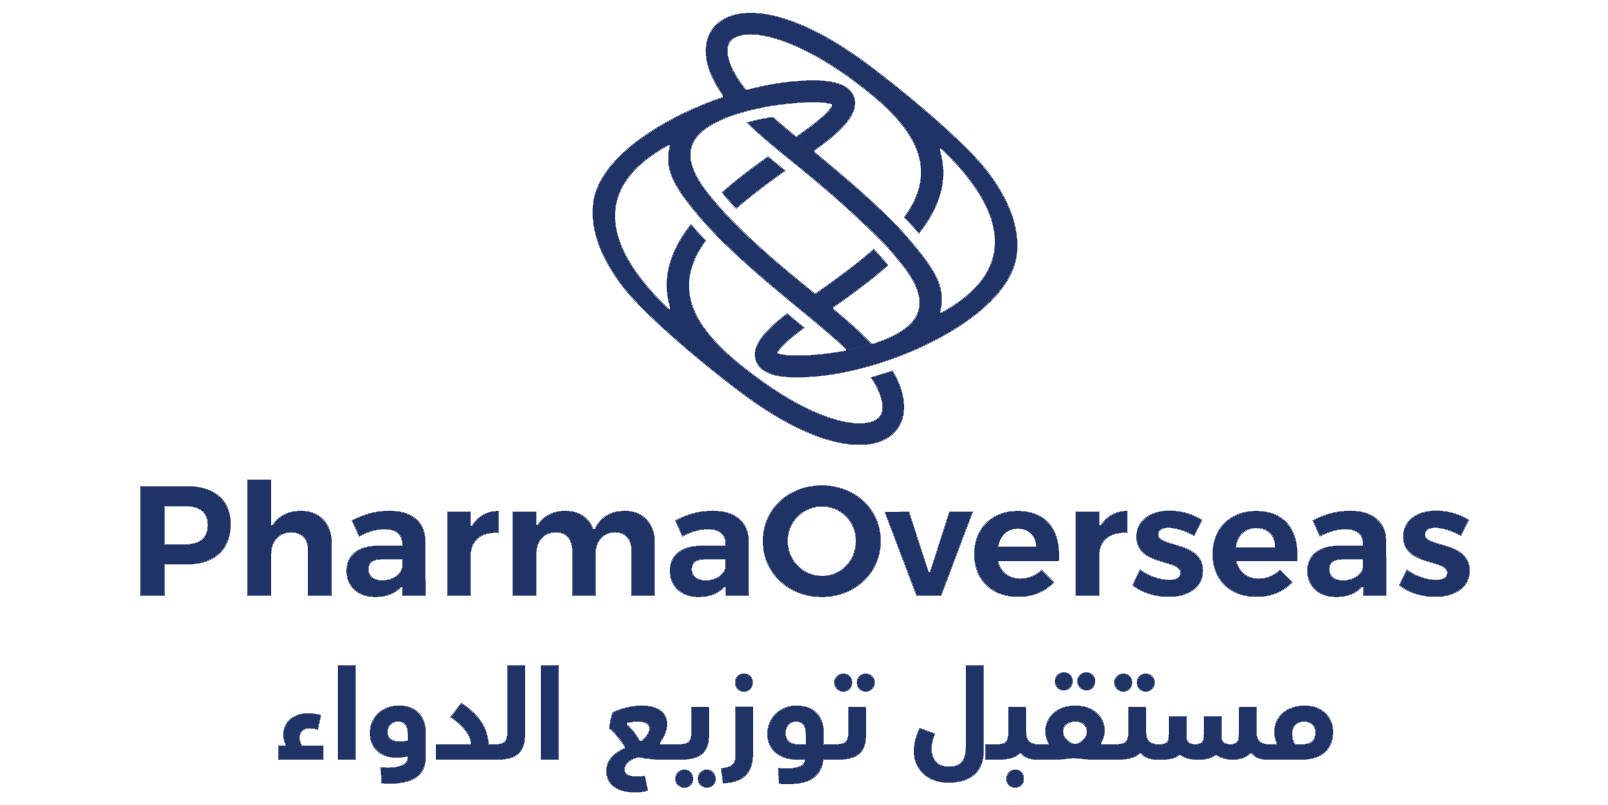 Pharma Overseas